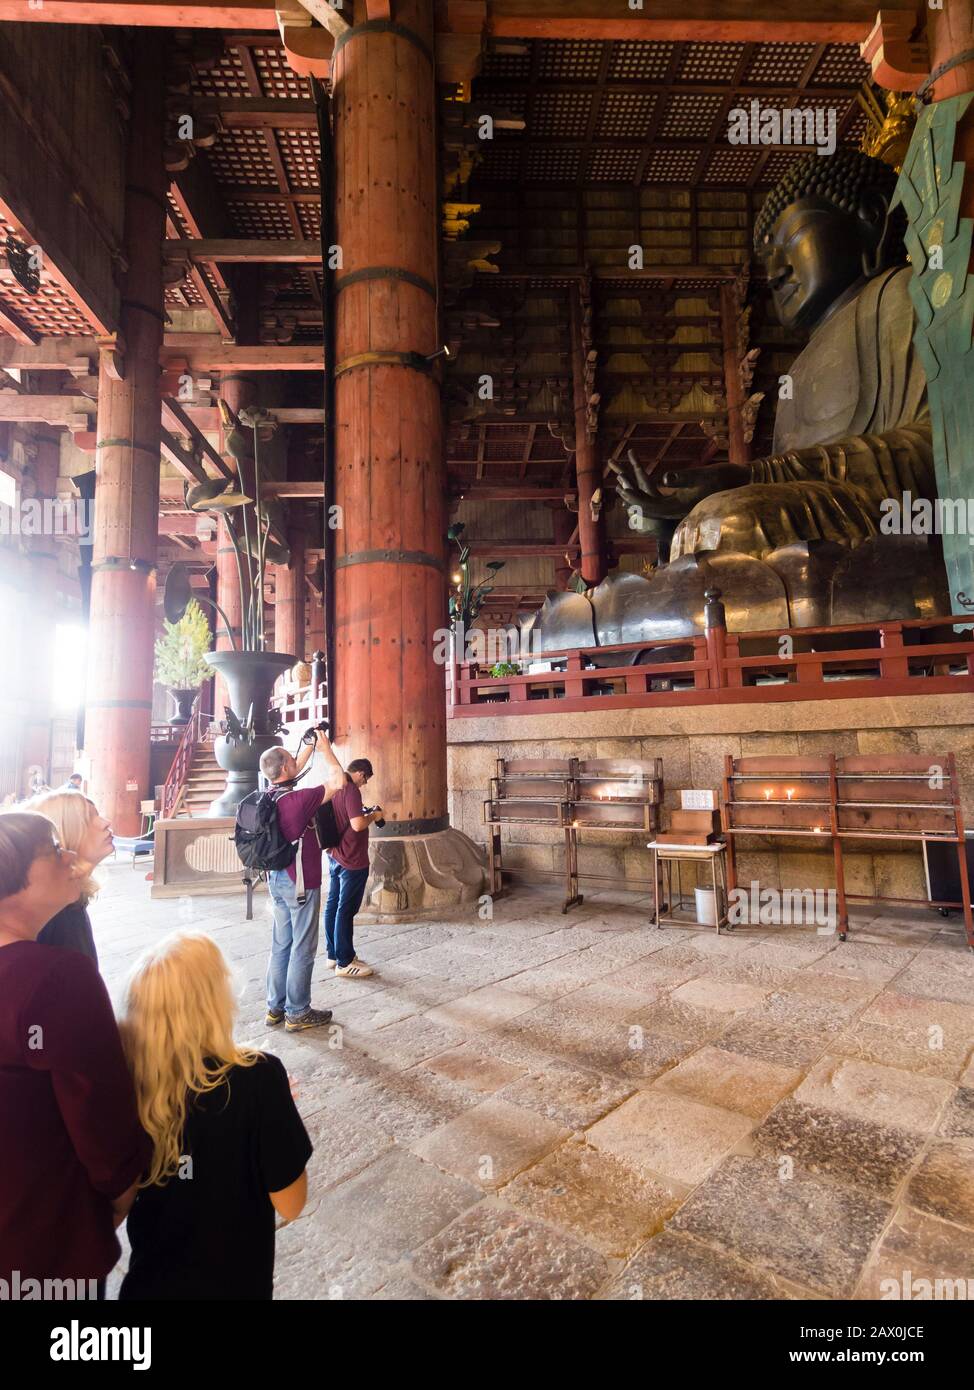 Nara, Giappone - 15 ottobre 2018: I turisti europei stanno scattando foto all'interno della Sala del Grande Buddha (Daibutsuden) di Tōdai-ji (Tempio Grande Orientale). Foto Stock